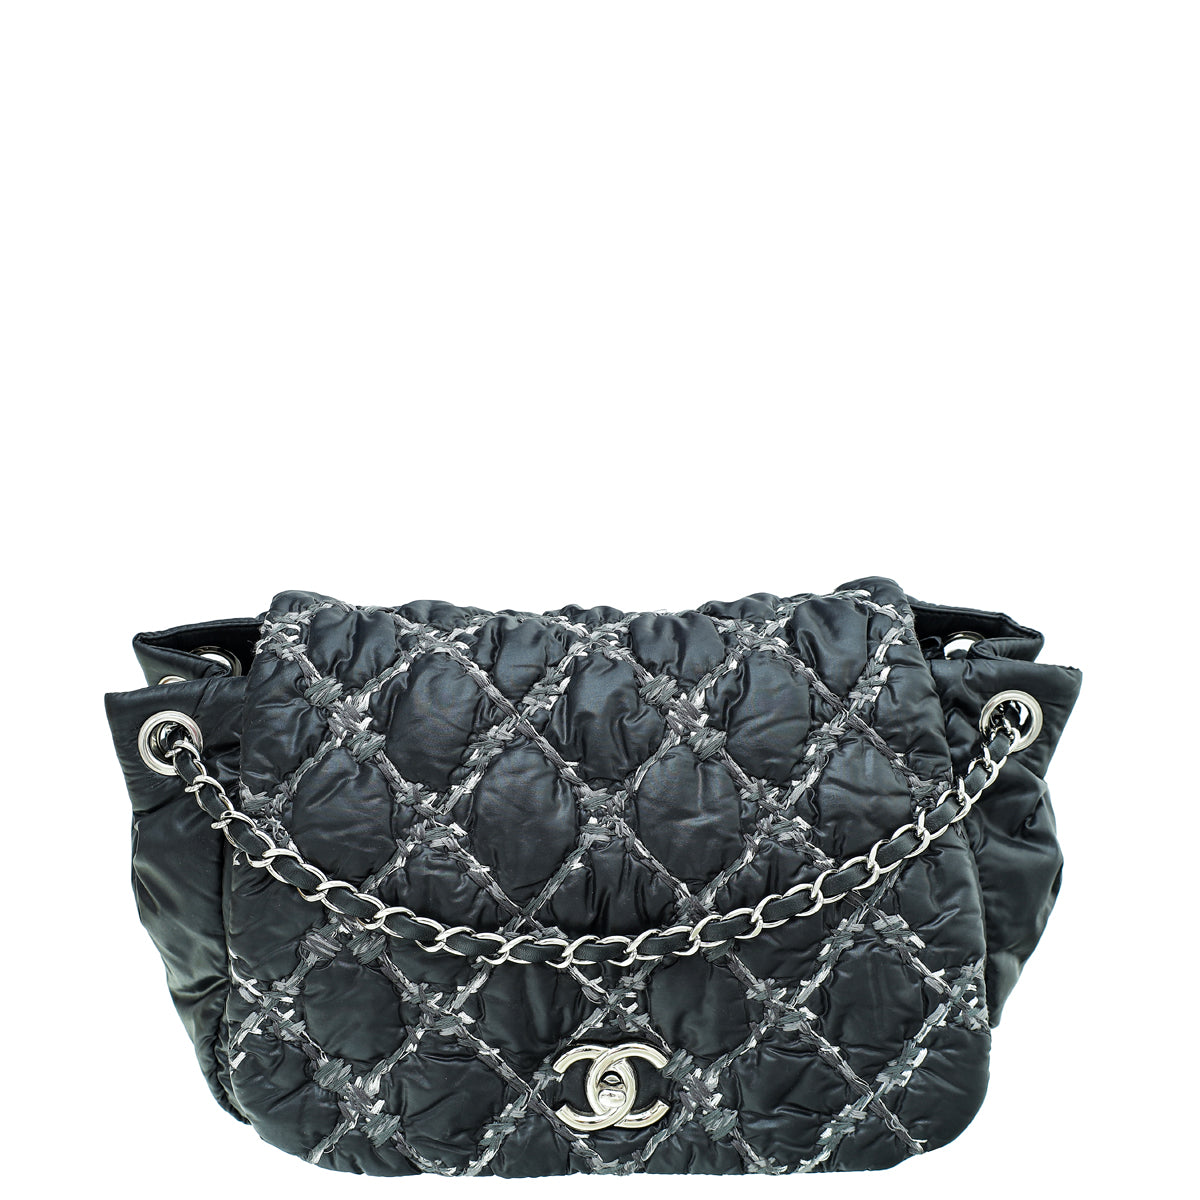 Chanel Coco Cocoon Handbag Collection 